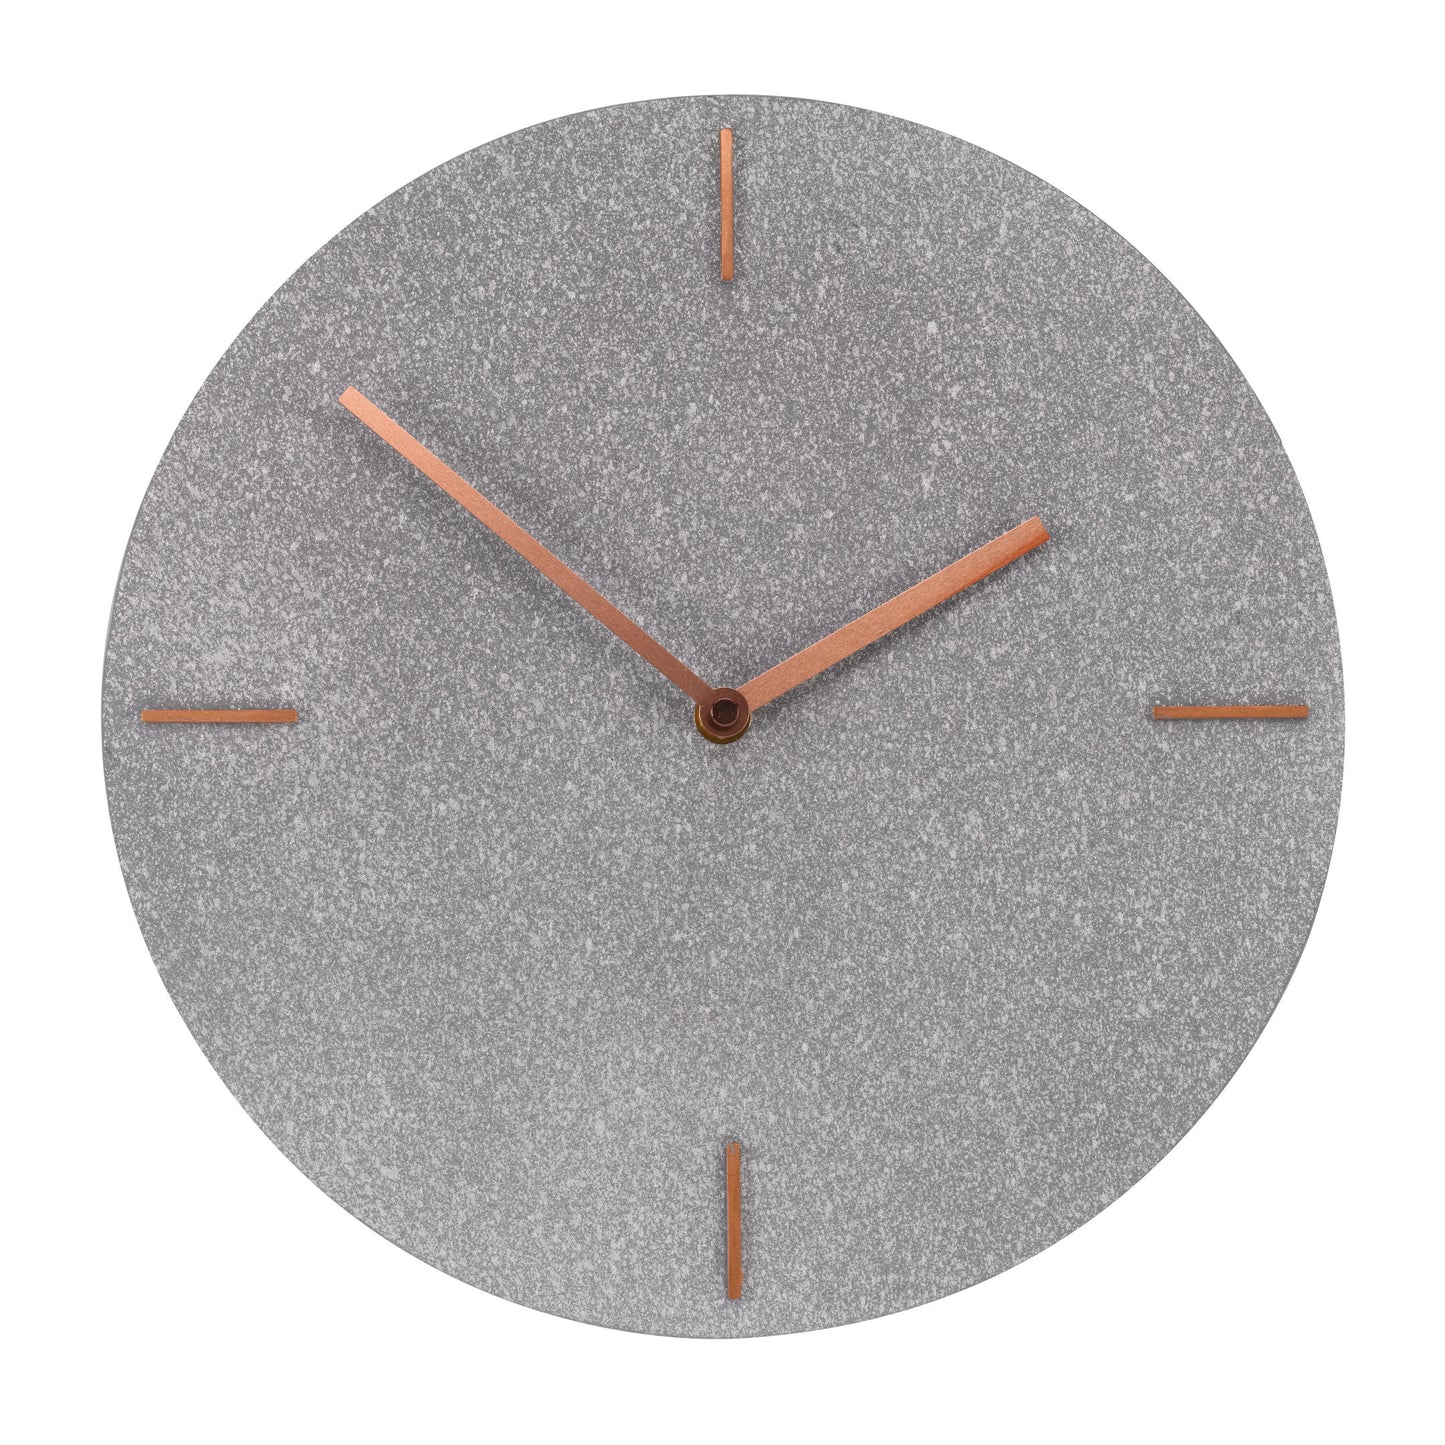 Jednoduché, minimalistické nástenné hodiny s priemerom 30cm od OUTSIDE- IN designs